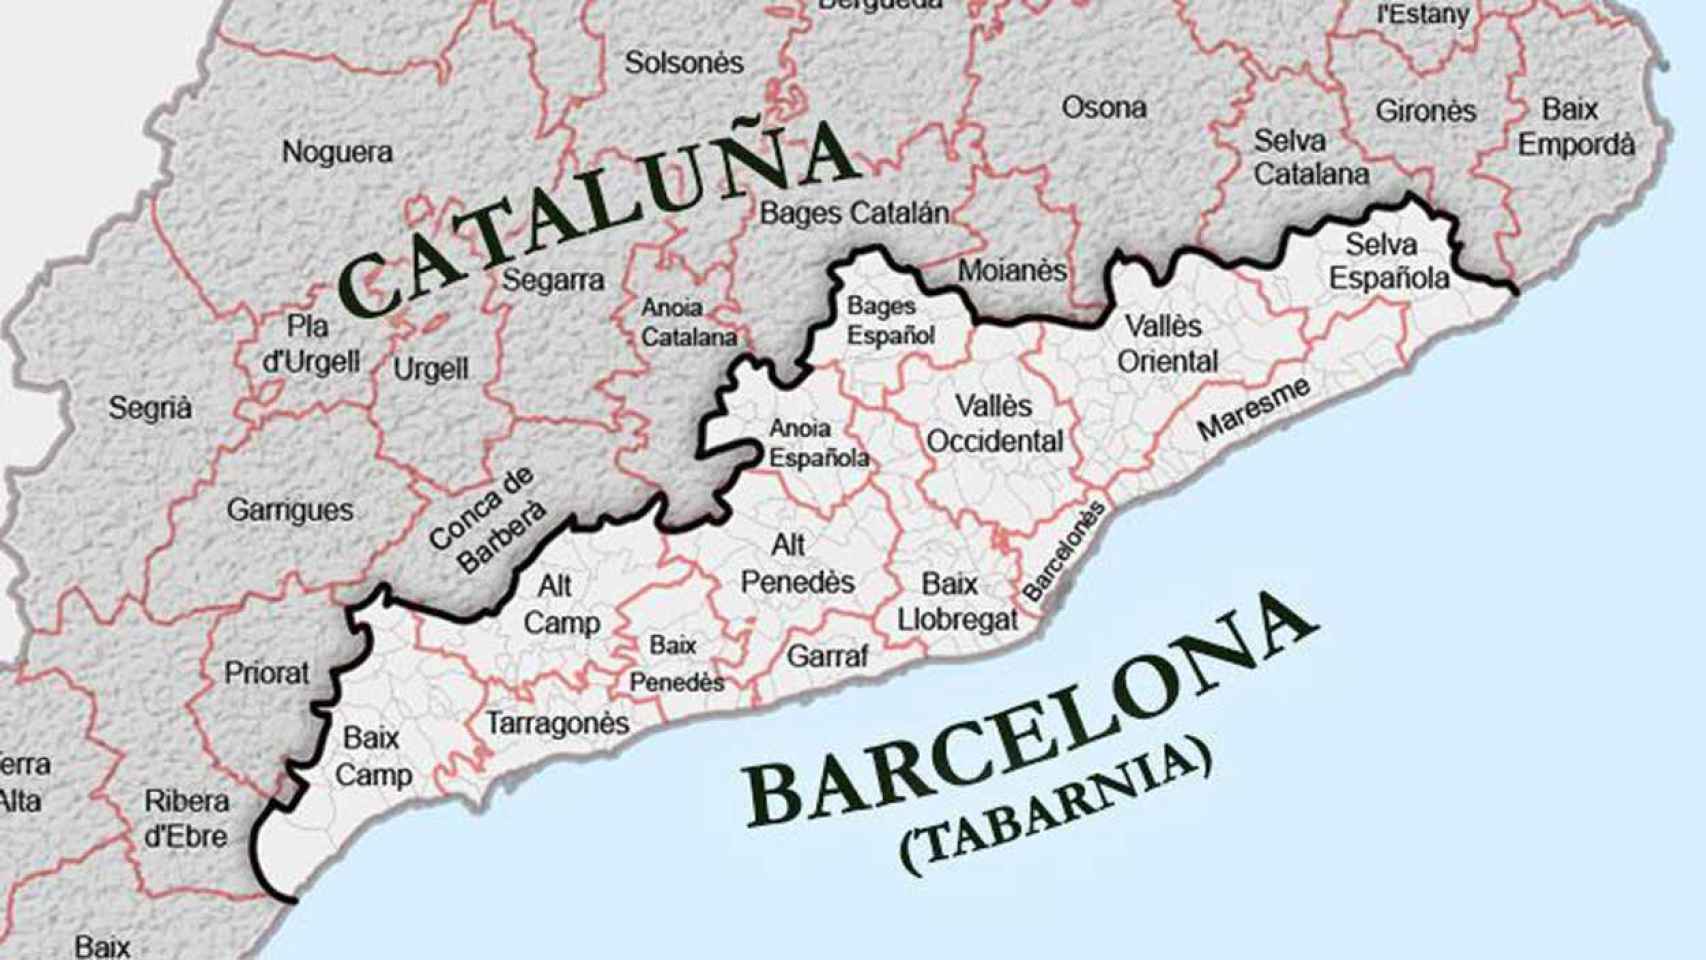 Estas son las comarcas que forman Tabarnia, según la plataforma  / PAB